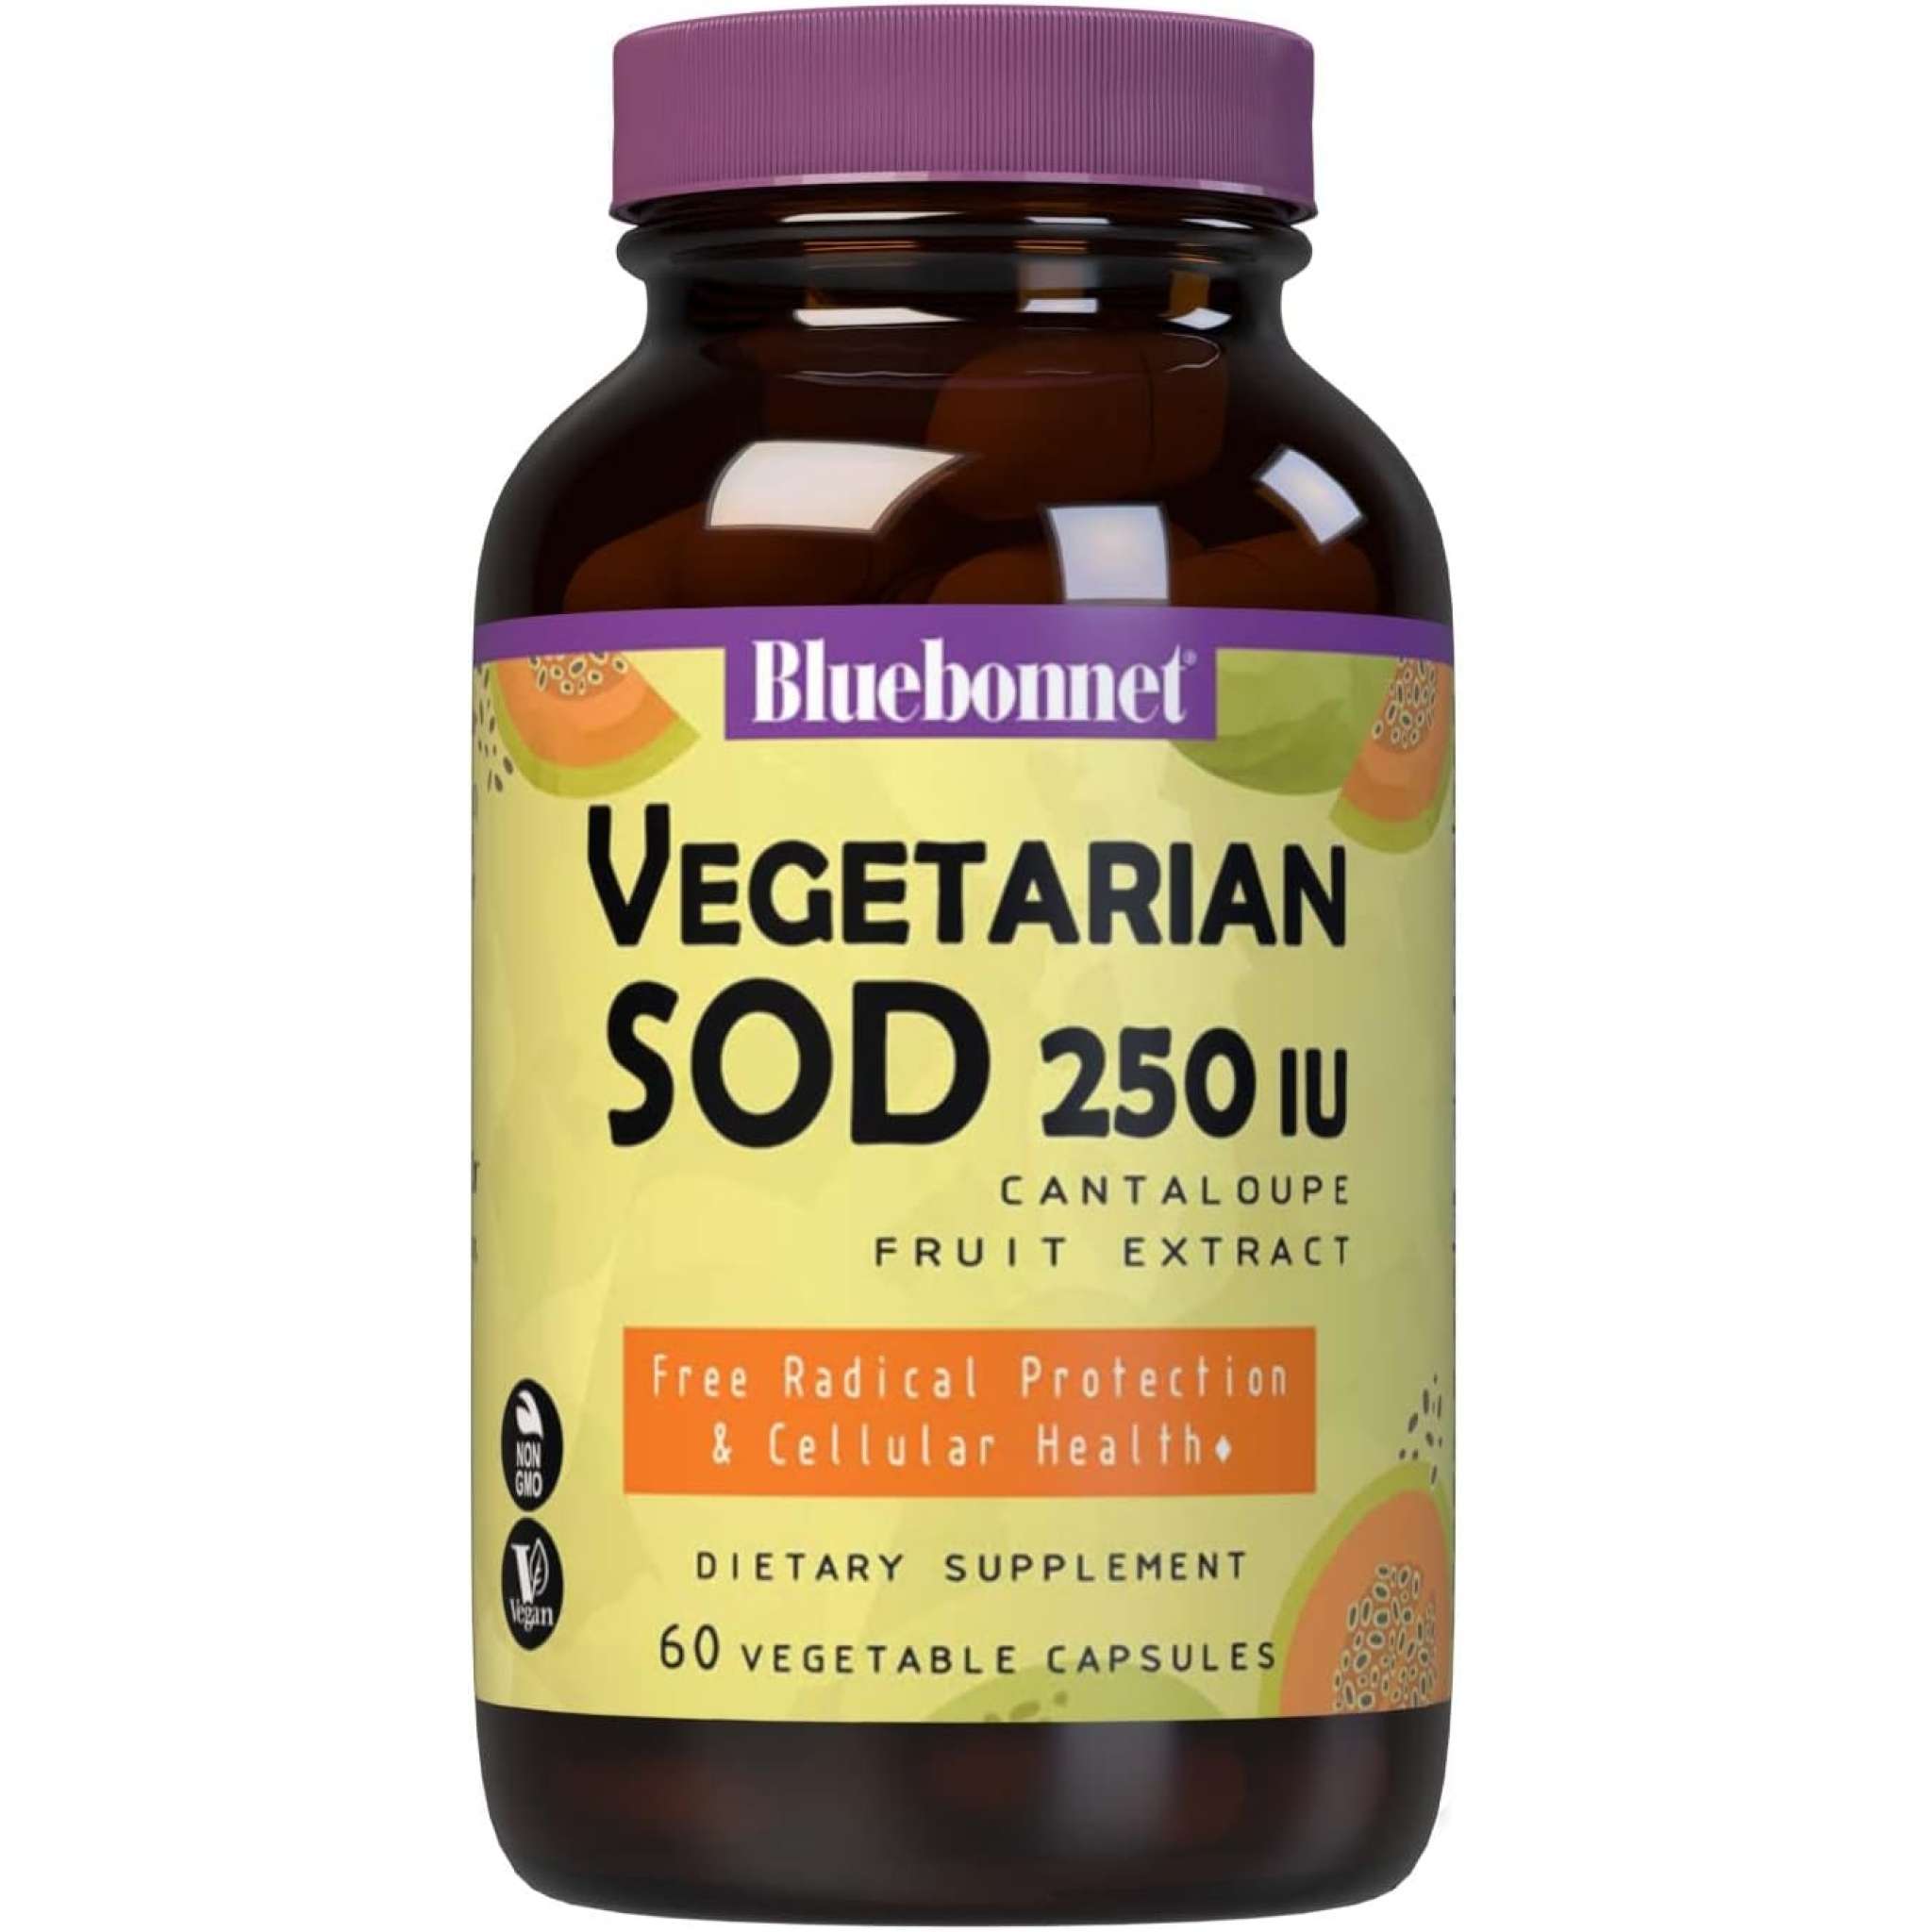 Bluebonnet - Sod 250 mg Veg Cantaloupe Frt